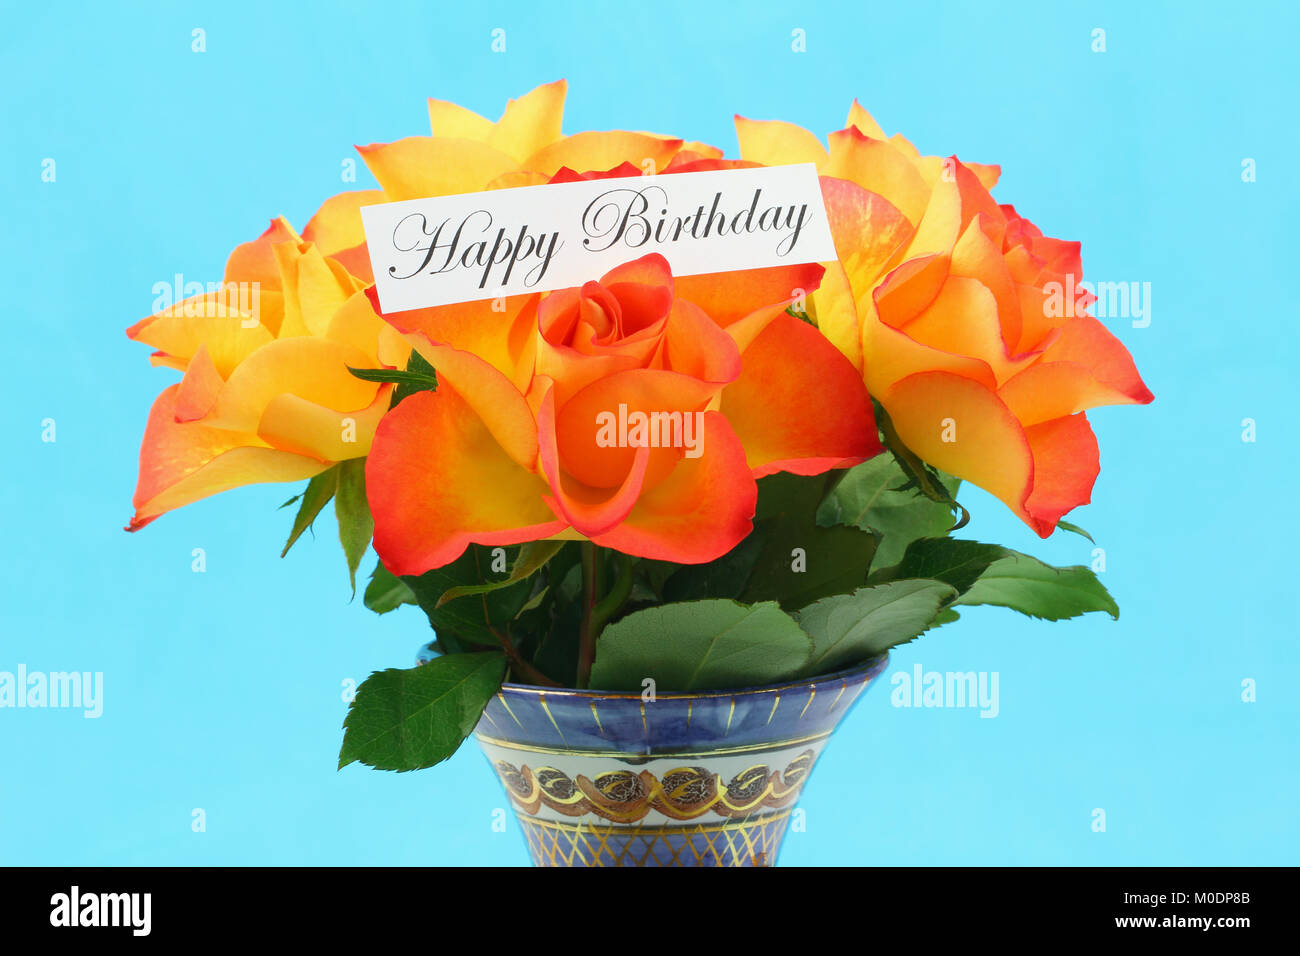 Joyeux Anniversaire Carte Avec Bouquet De Roses Dans Un Vase Orange Sur Fond Bleu Vif Photo Stock Alamy